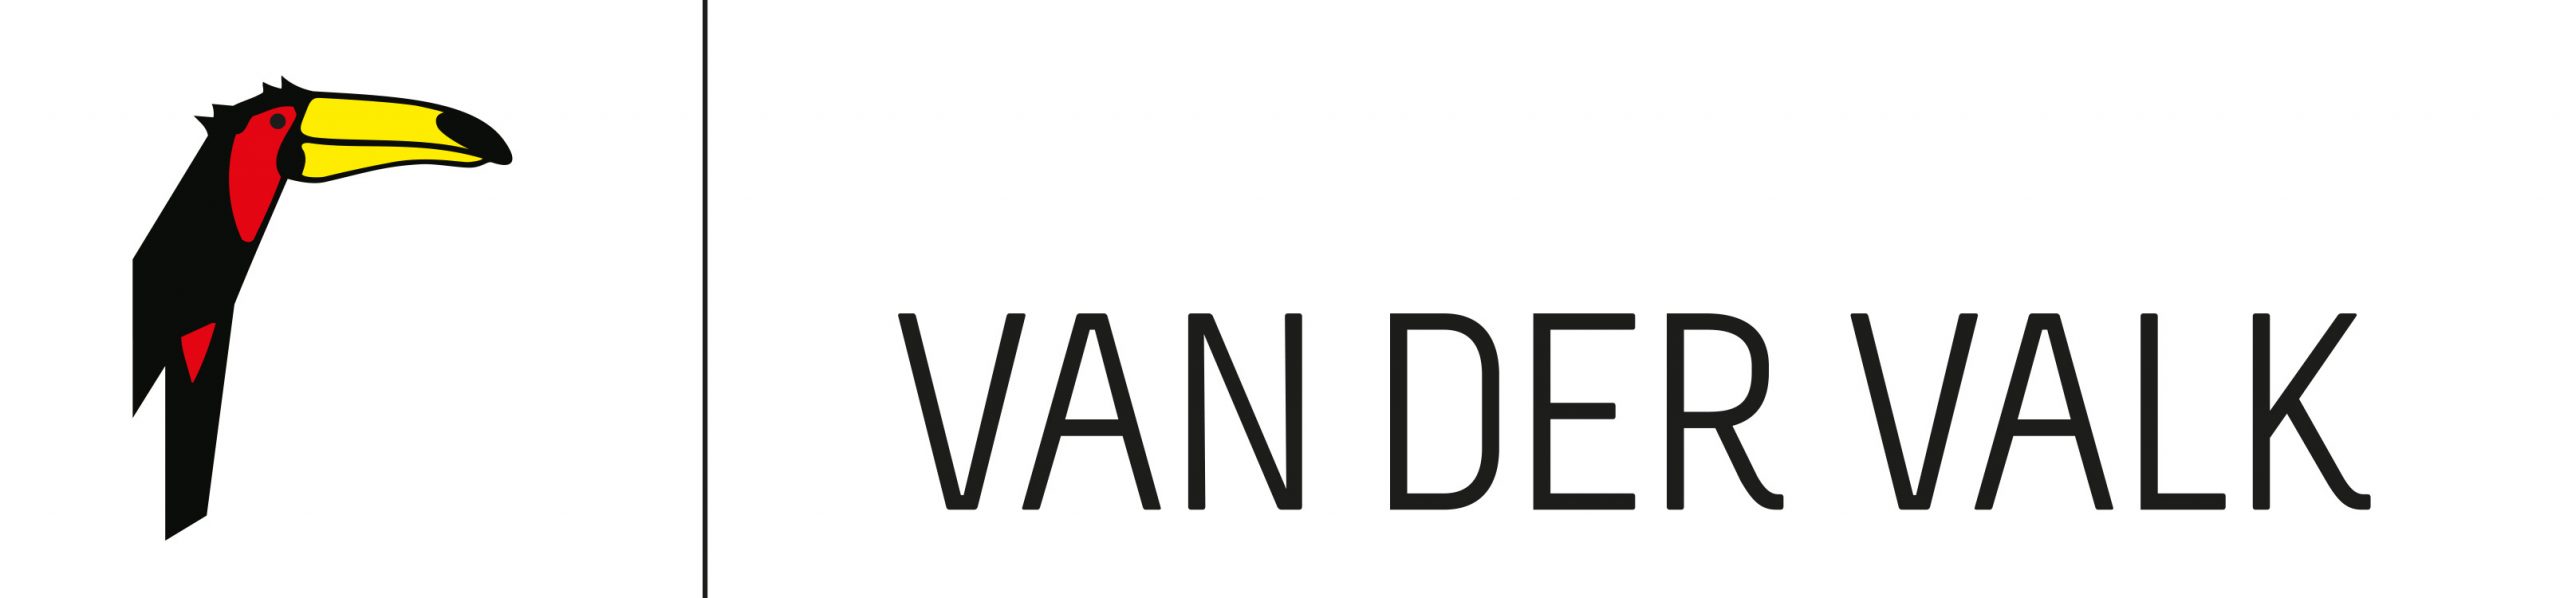 Van-der-Valk-logo-FC-scaled.jpeg